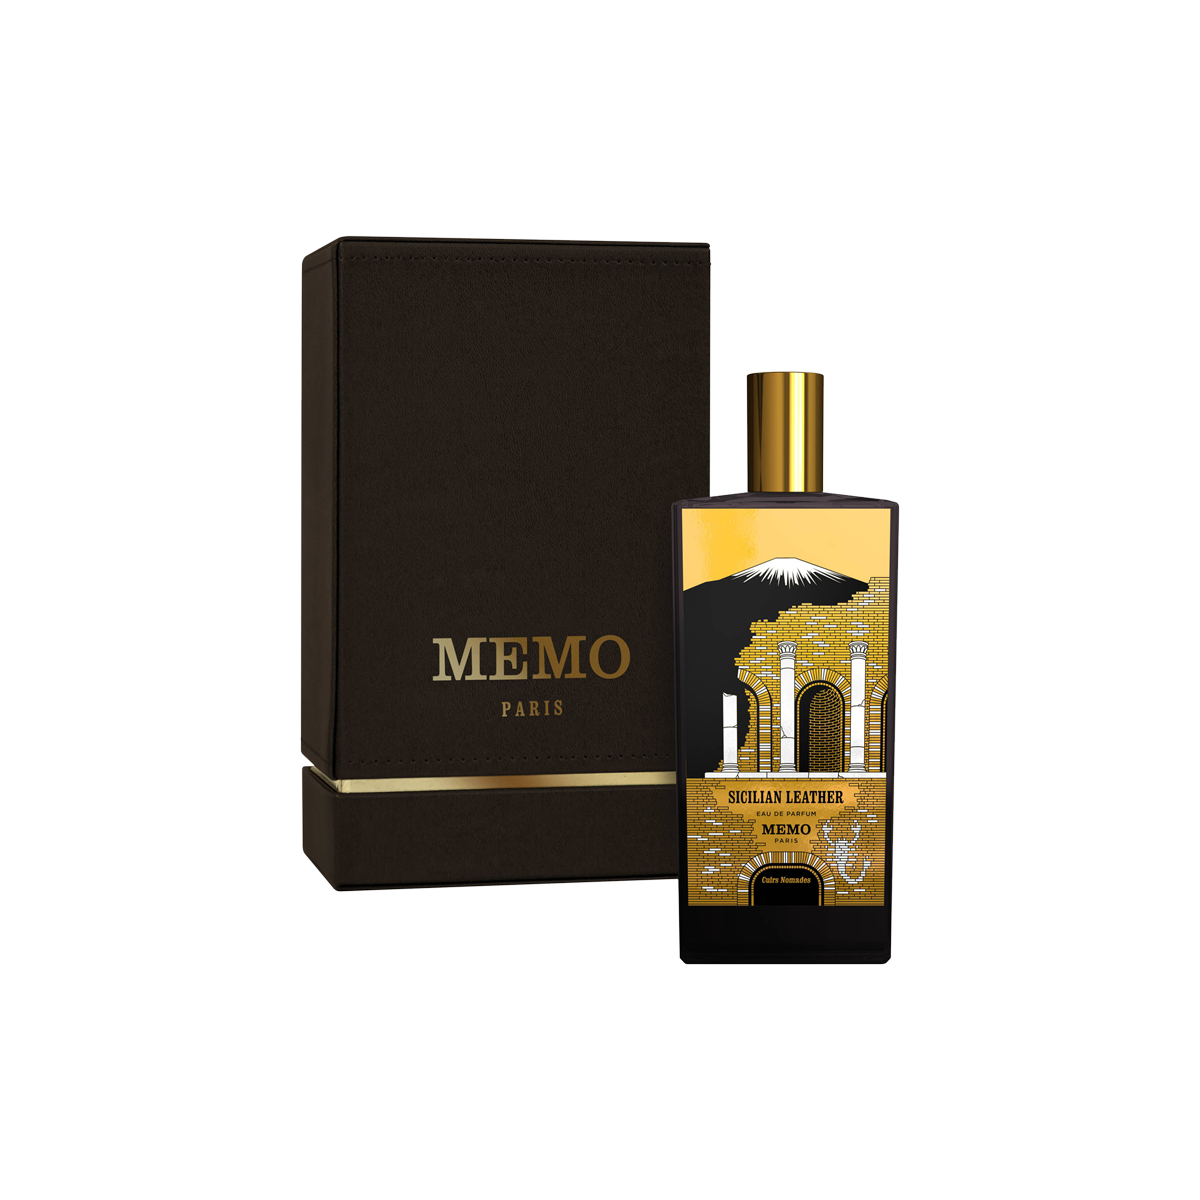 Memo Paris - Sicilian Leather Eau de Parfum